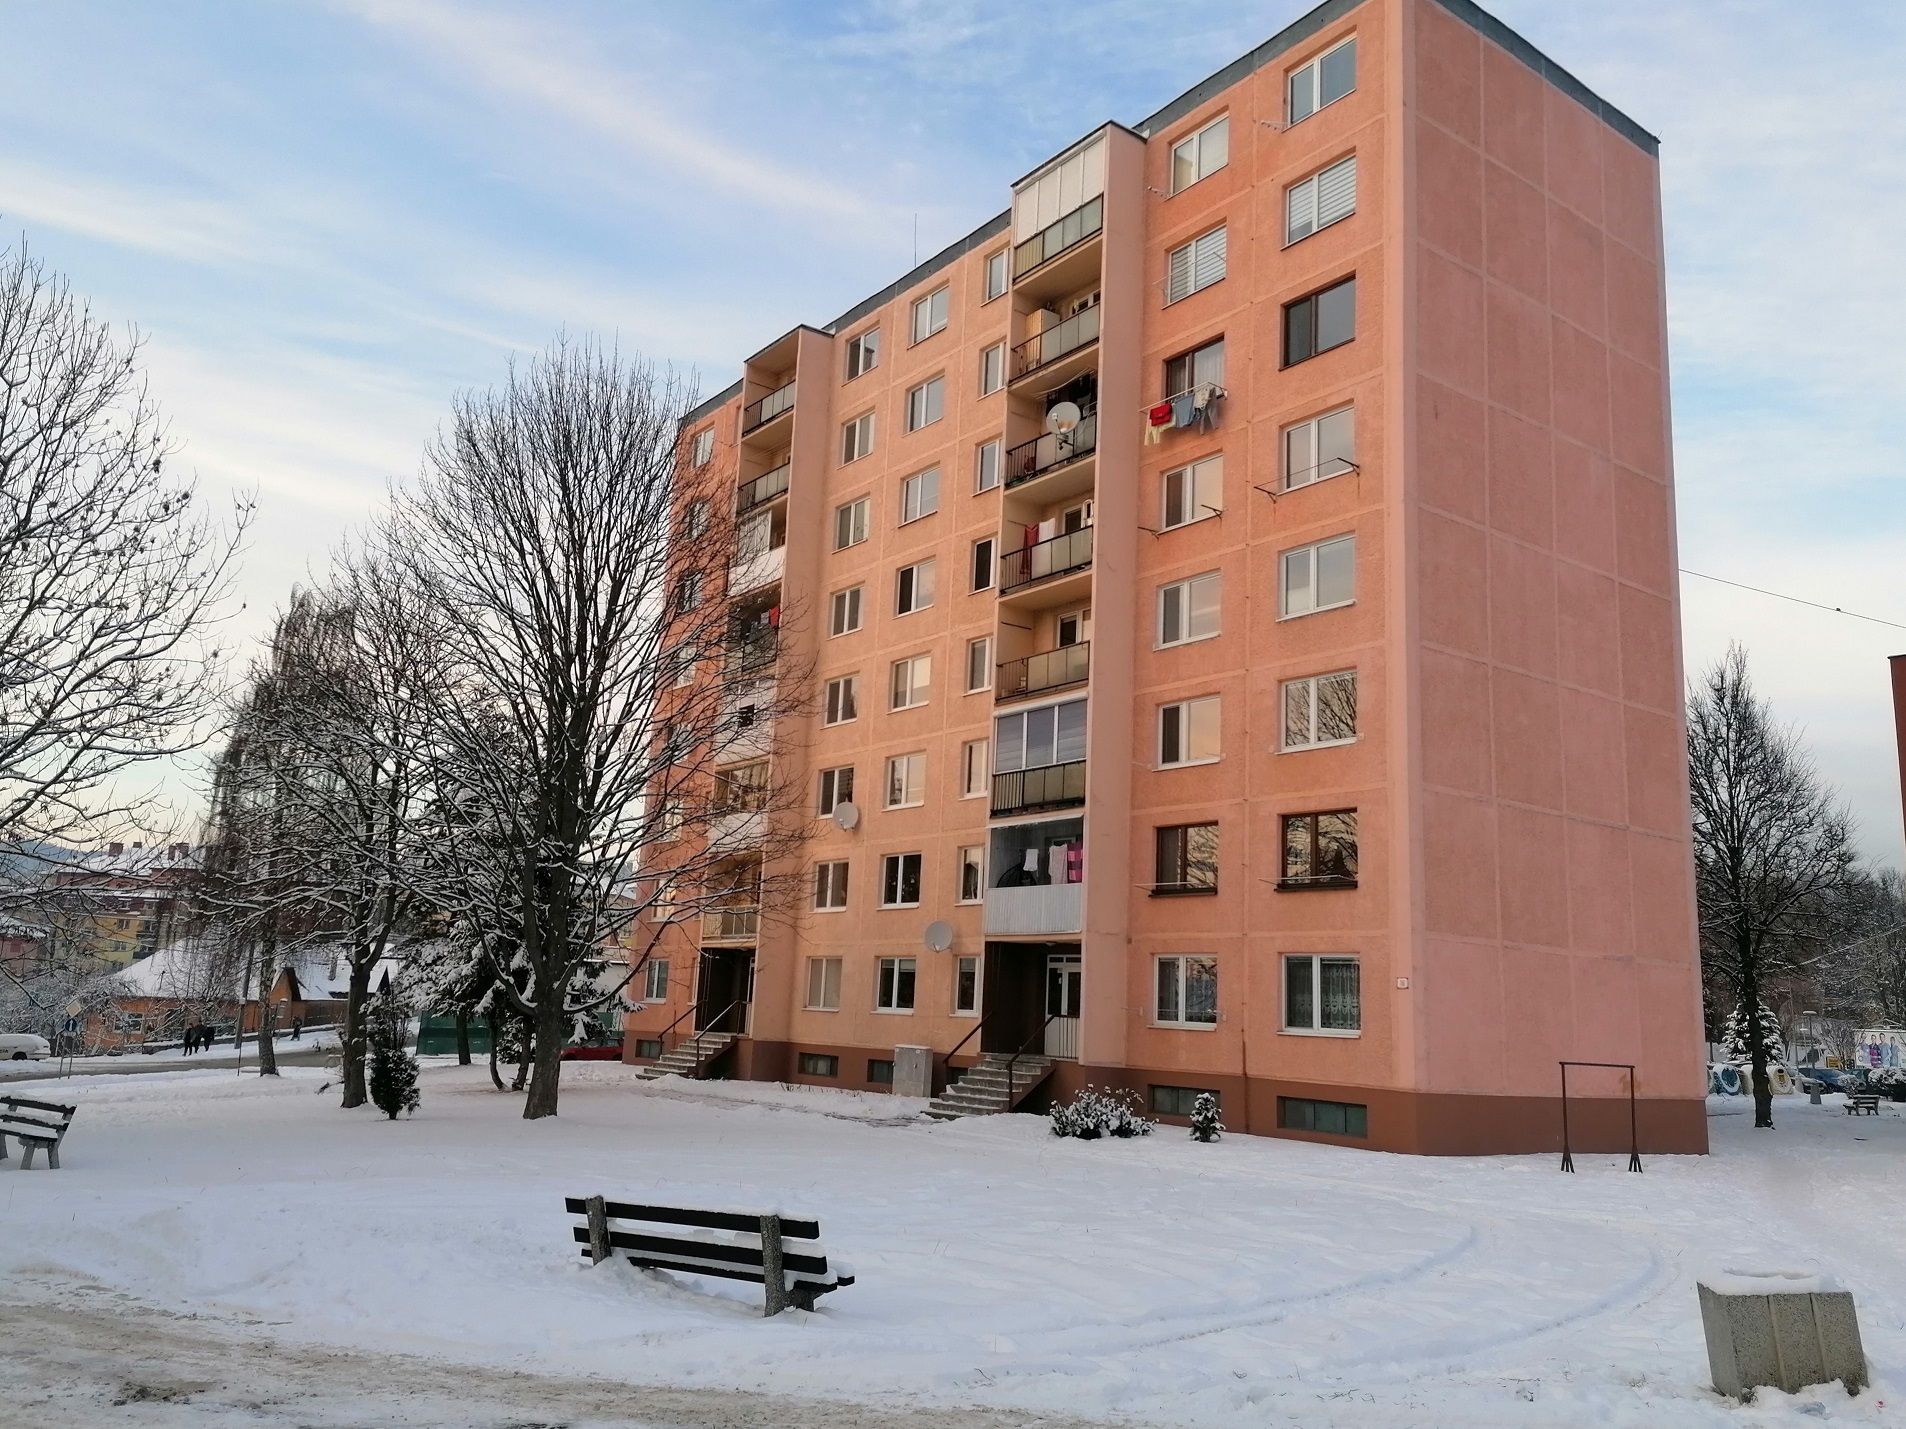 PREDANÉ: 3-izbový čiastočne zrenovovaný byt, Levoča, sídlisko Pri Prameni, blok Jantár